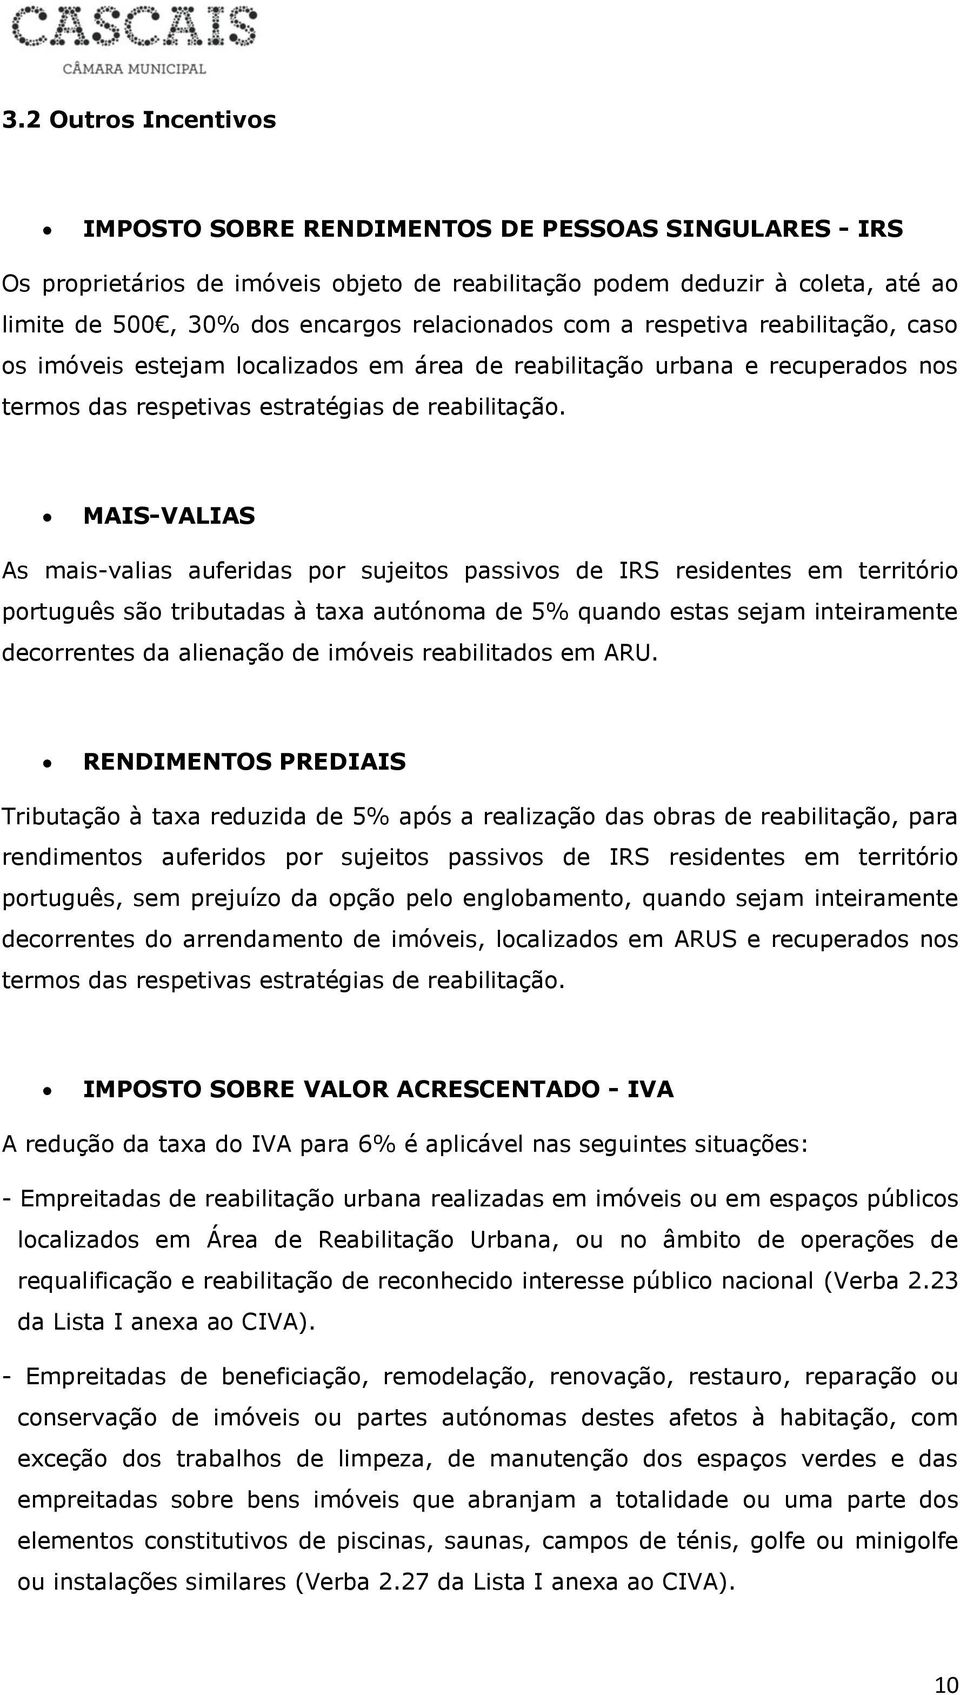 MAIS-VALIAS As mais-valias auferidas por sujeitos passivos de IRS residentes em território português são tributadas à taxa autónoma de 5% quando estas sejam inteiramente decorrentes da alienação de